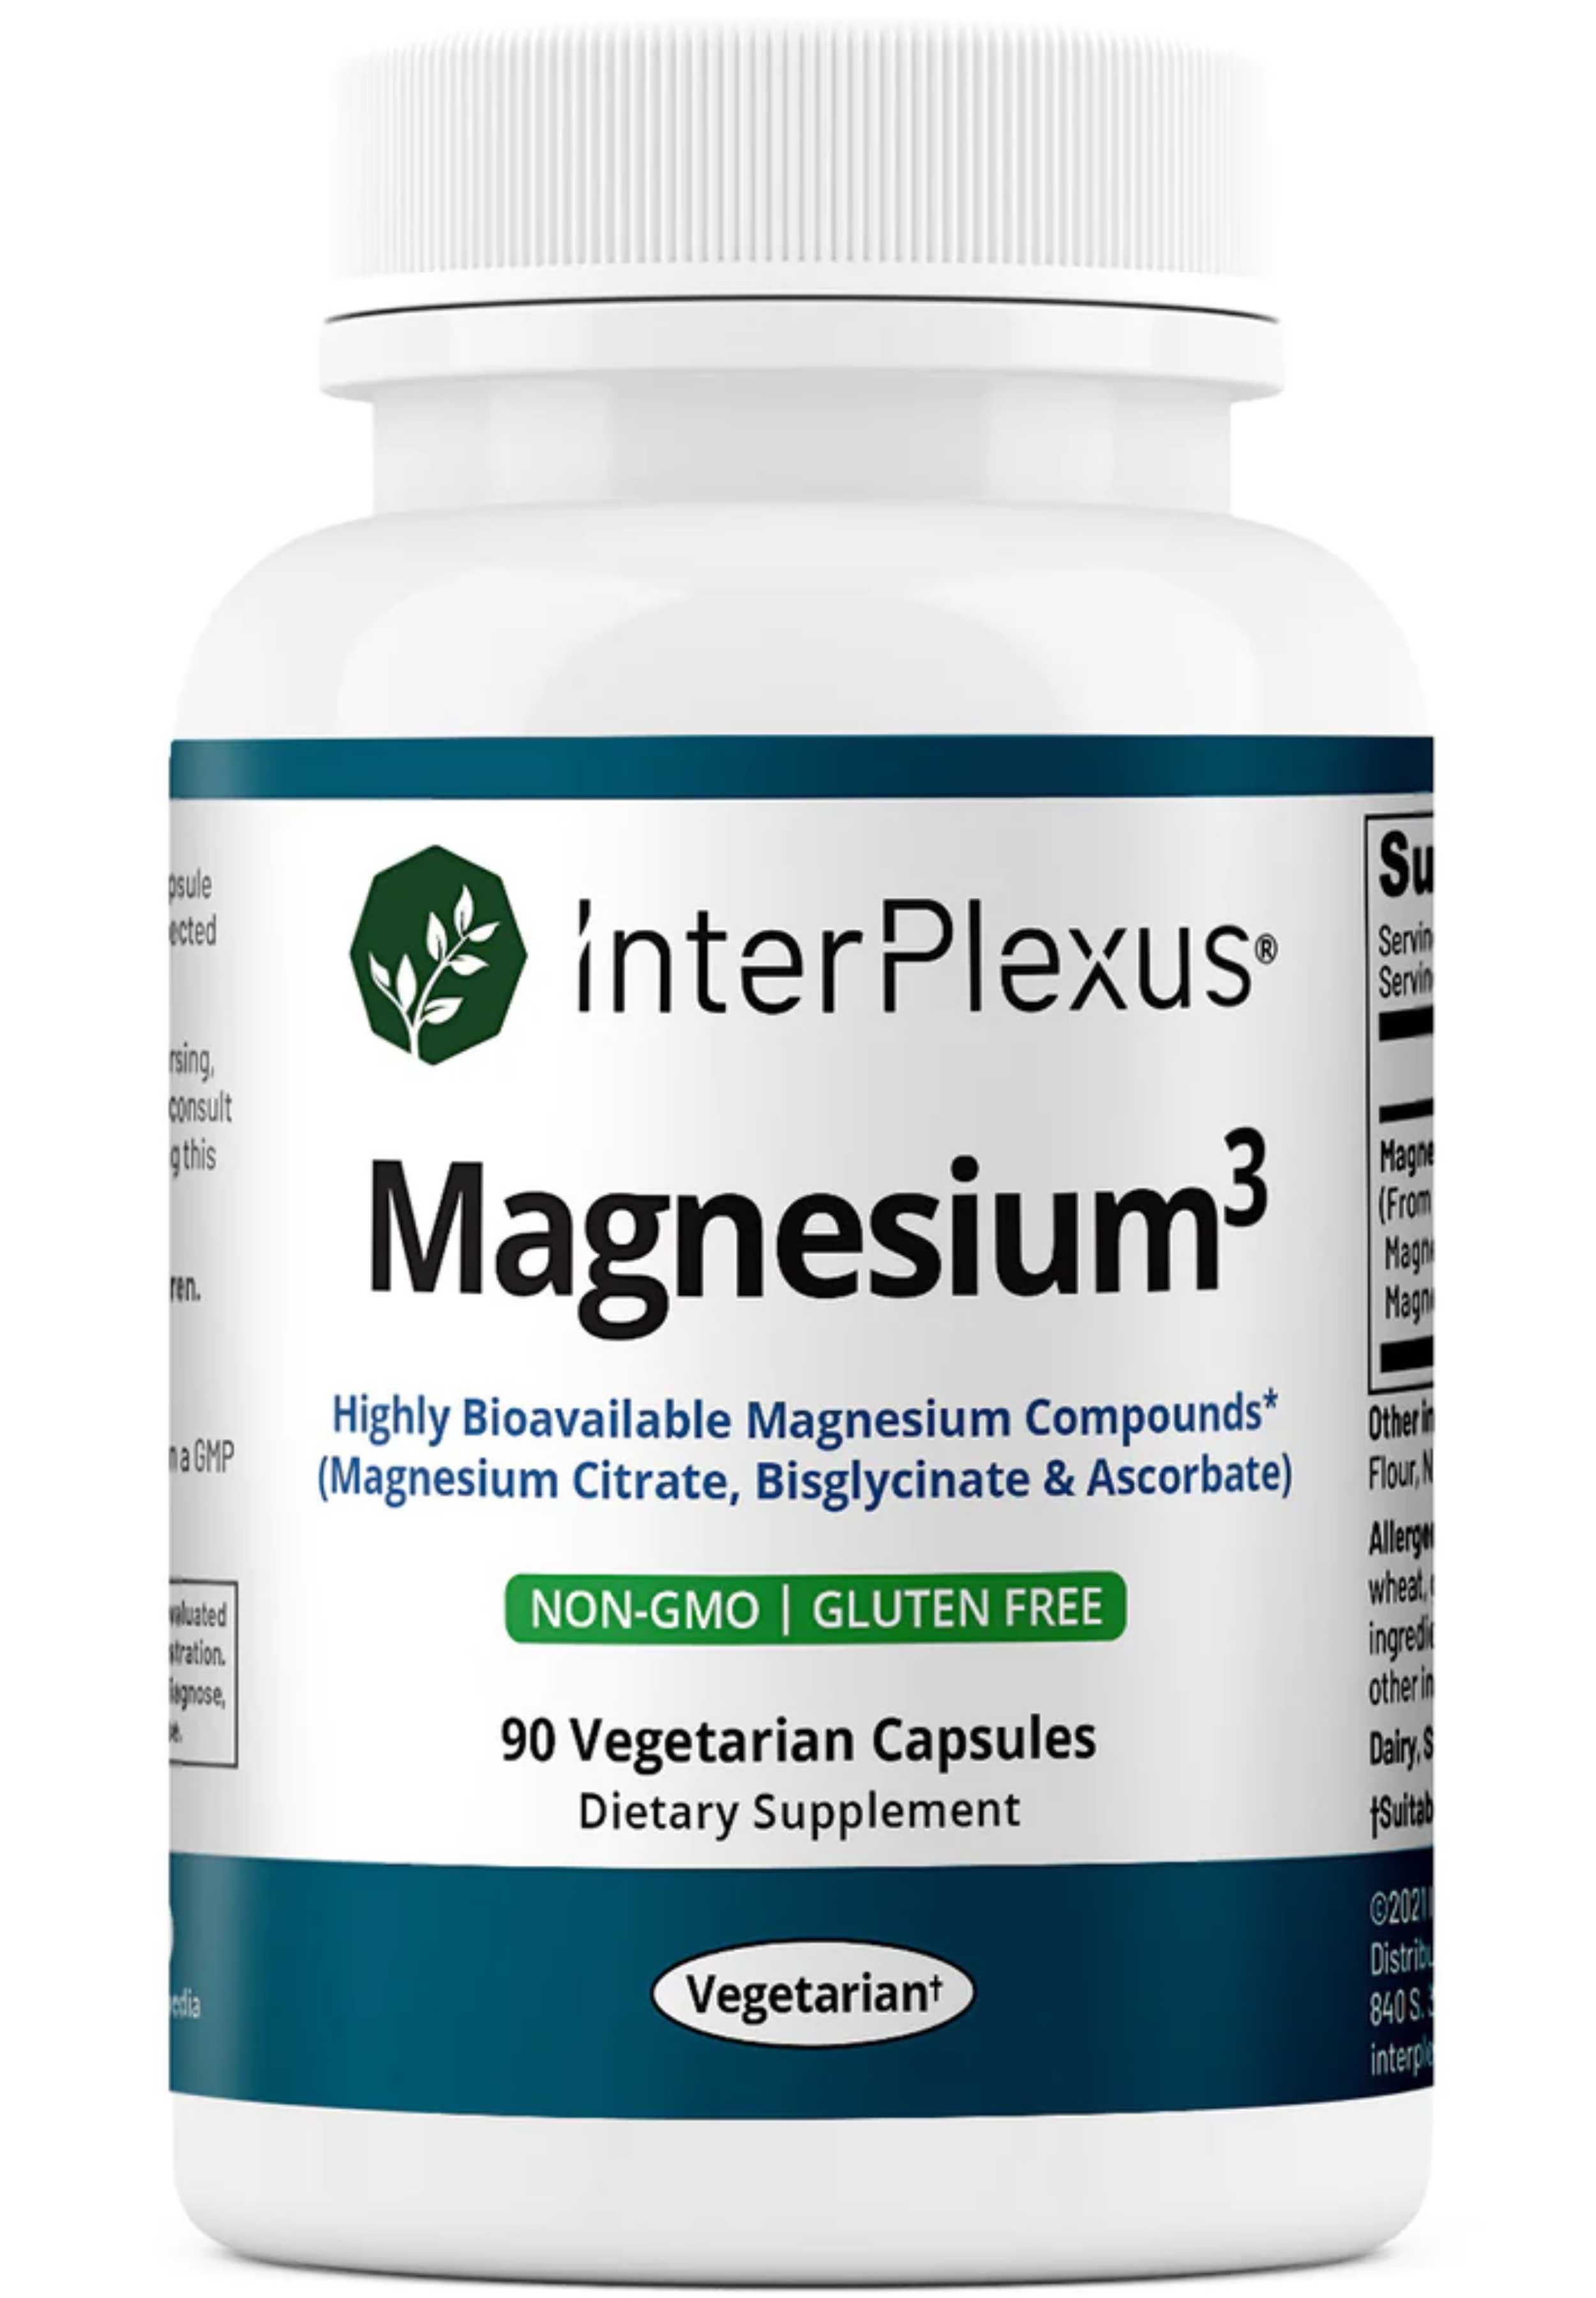 InterPlexus Magnesium³